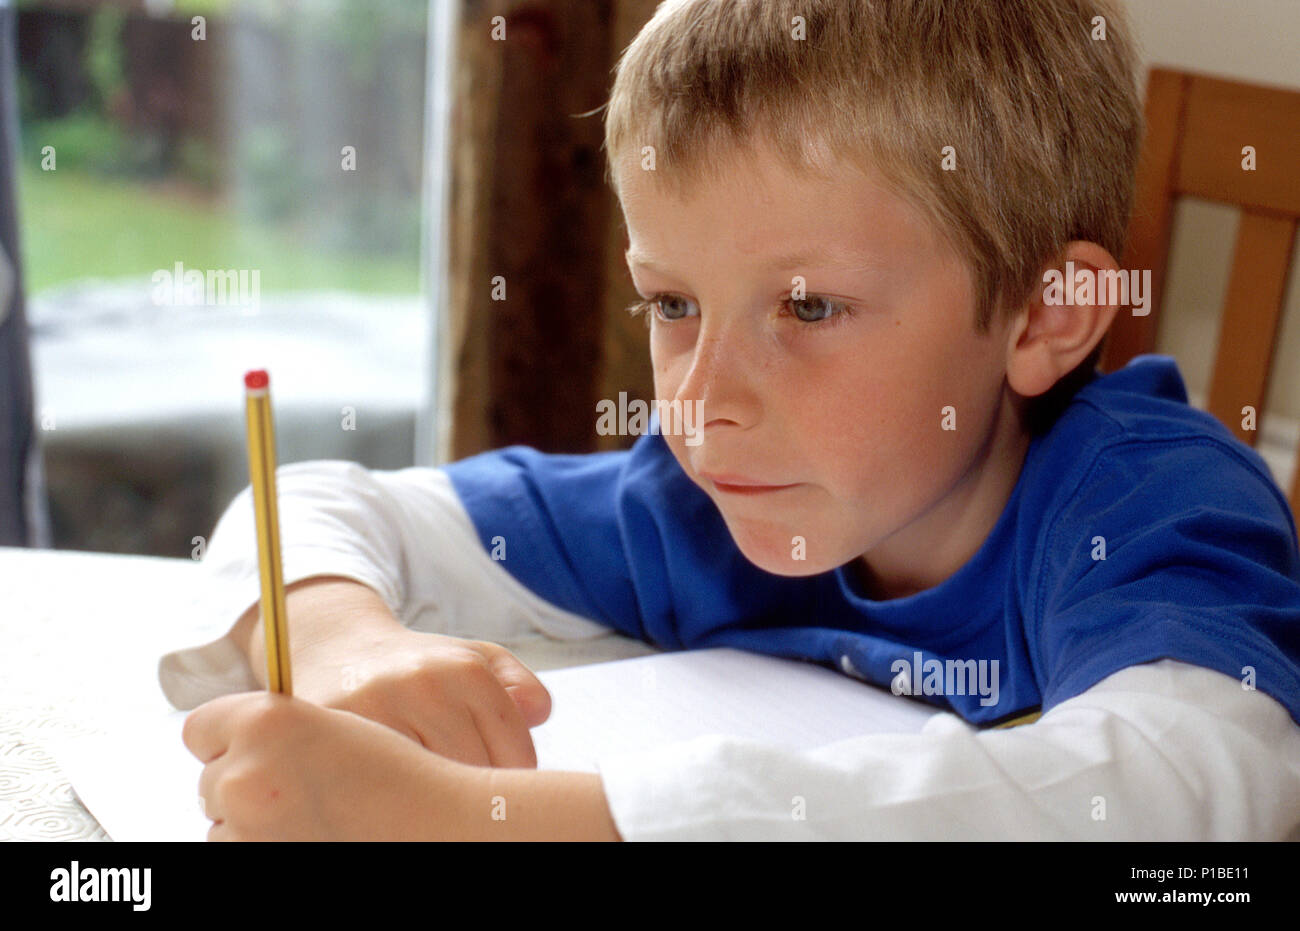 Junge schreiben lernen Stockfoto